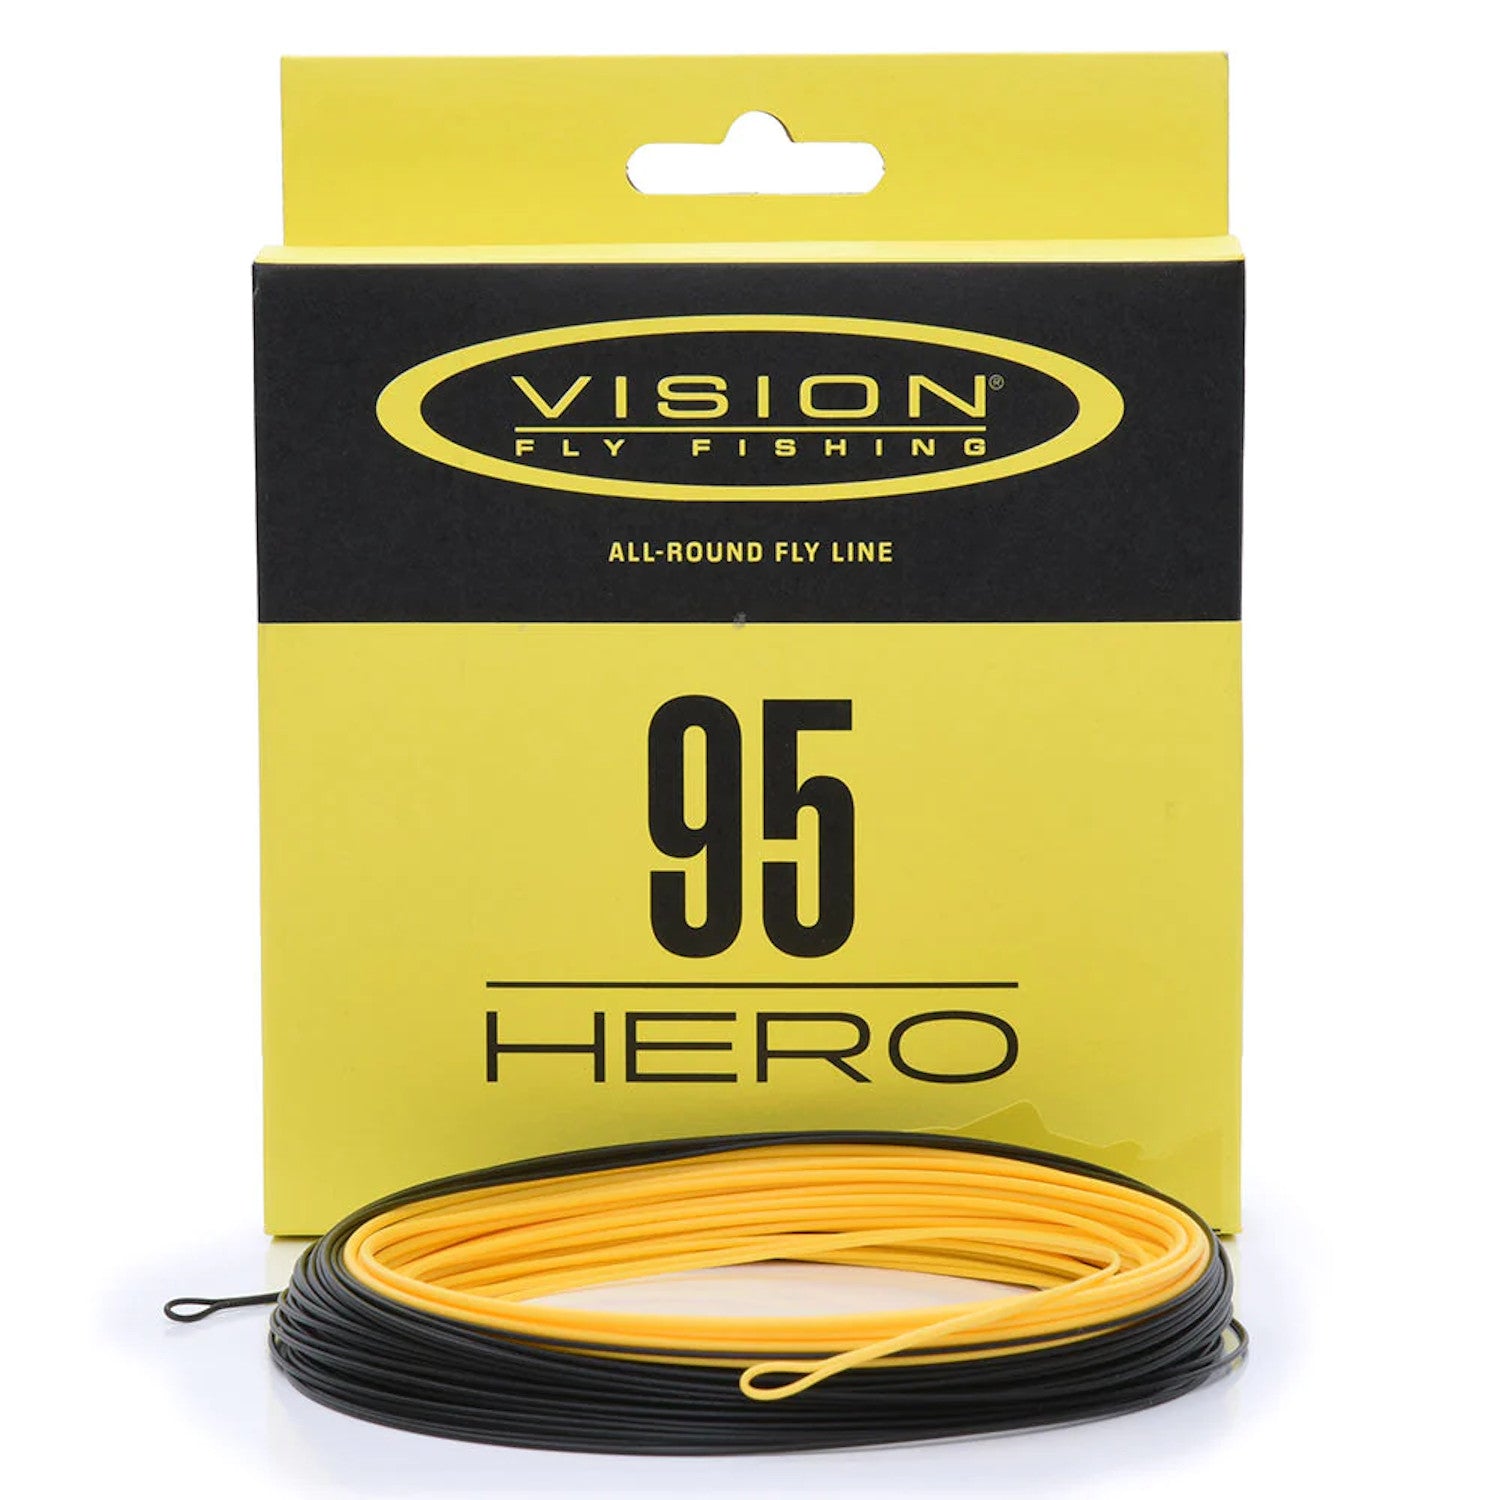 Vision Hero 95 Schnur 